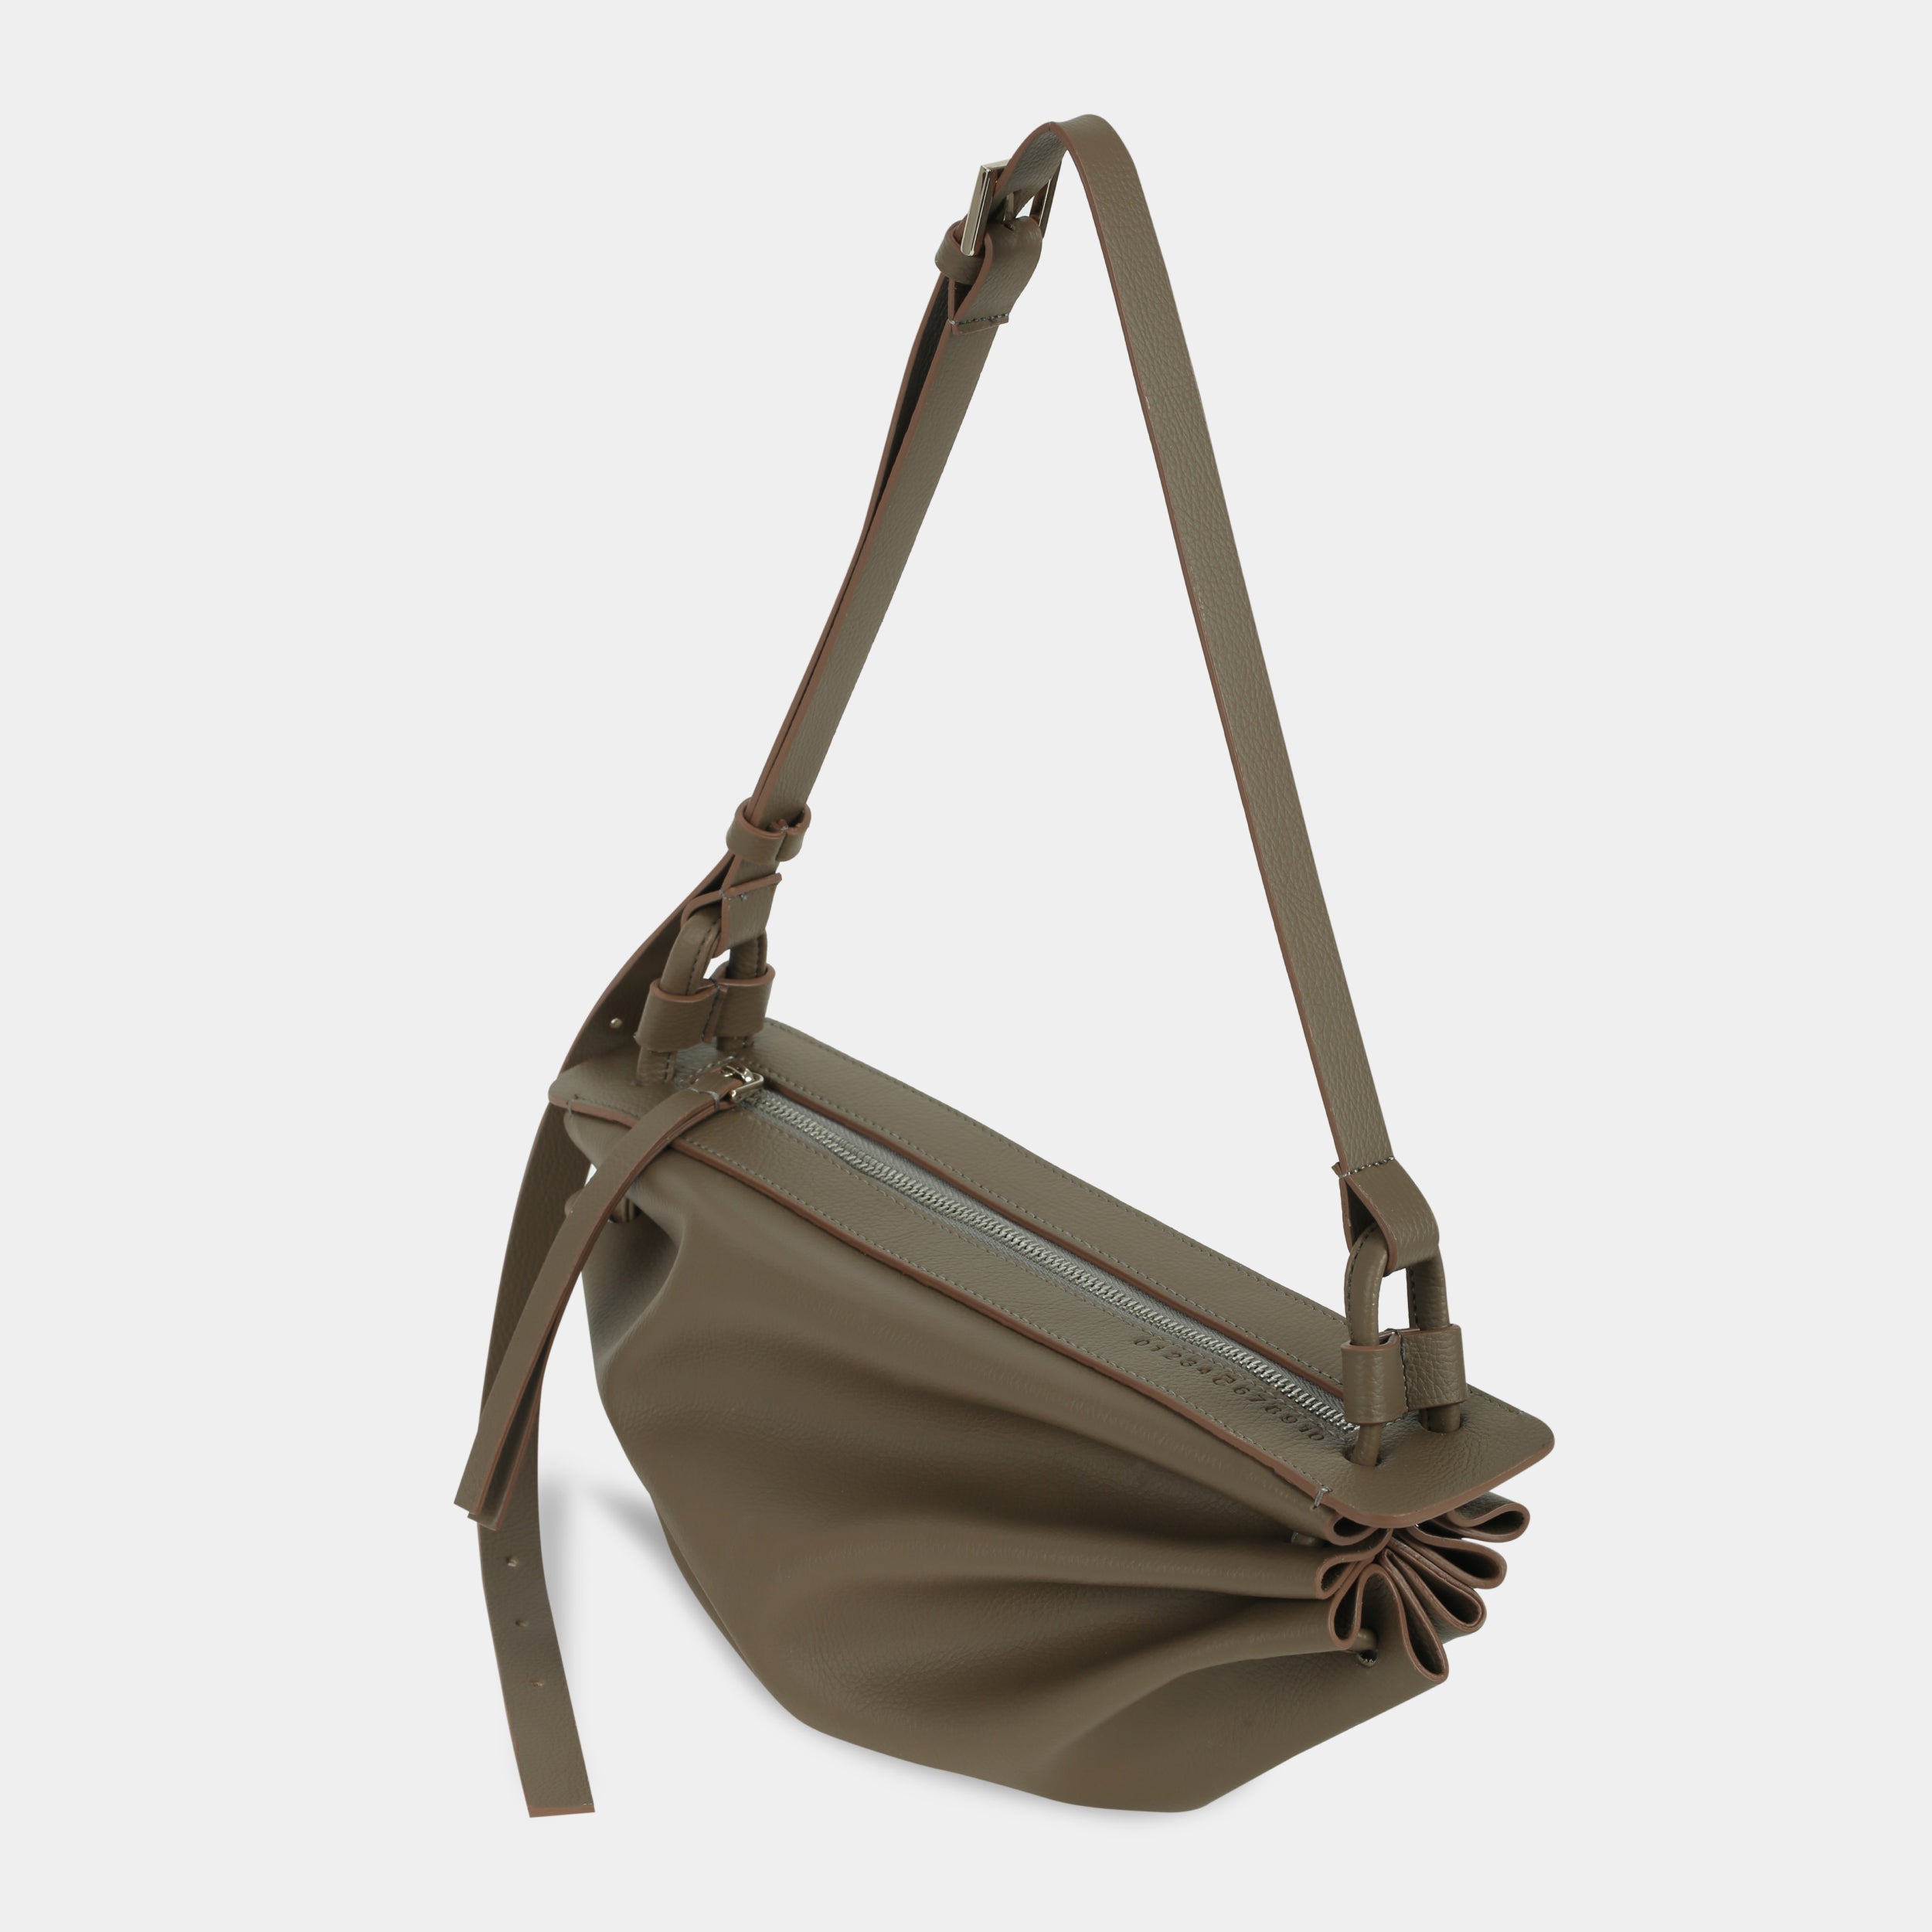 BOAT bag large size (M) dark beige color